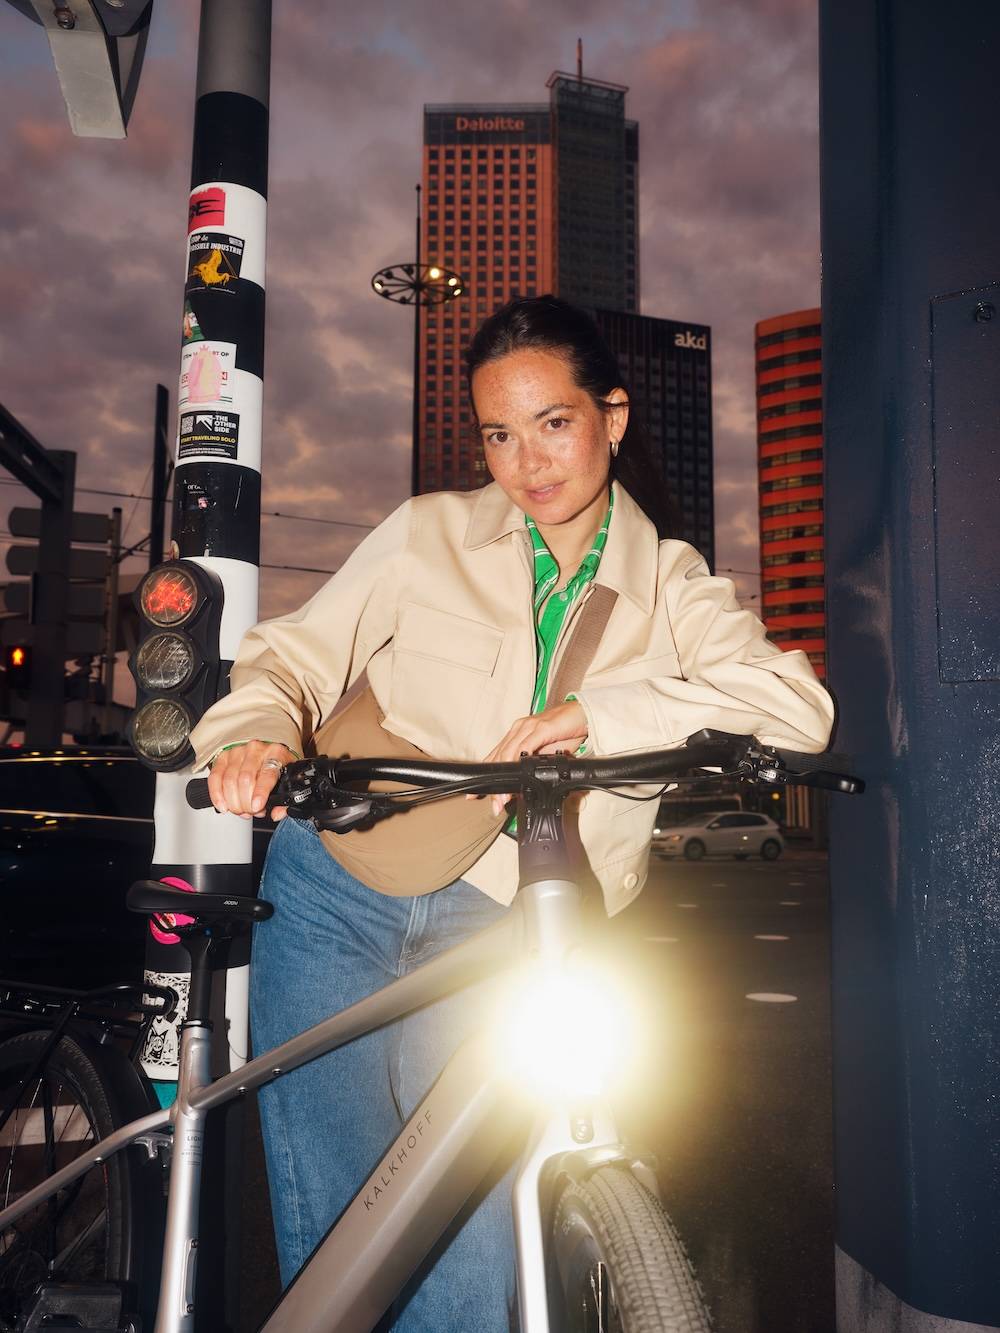 Junge Frau mit E-Bike in der Stadt